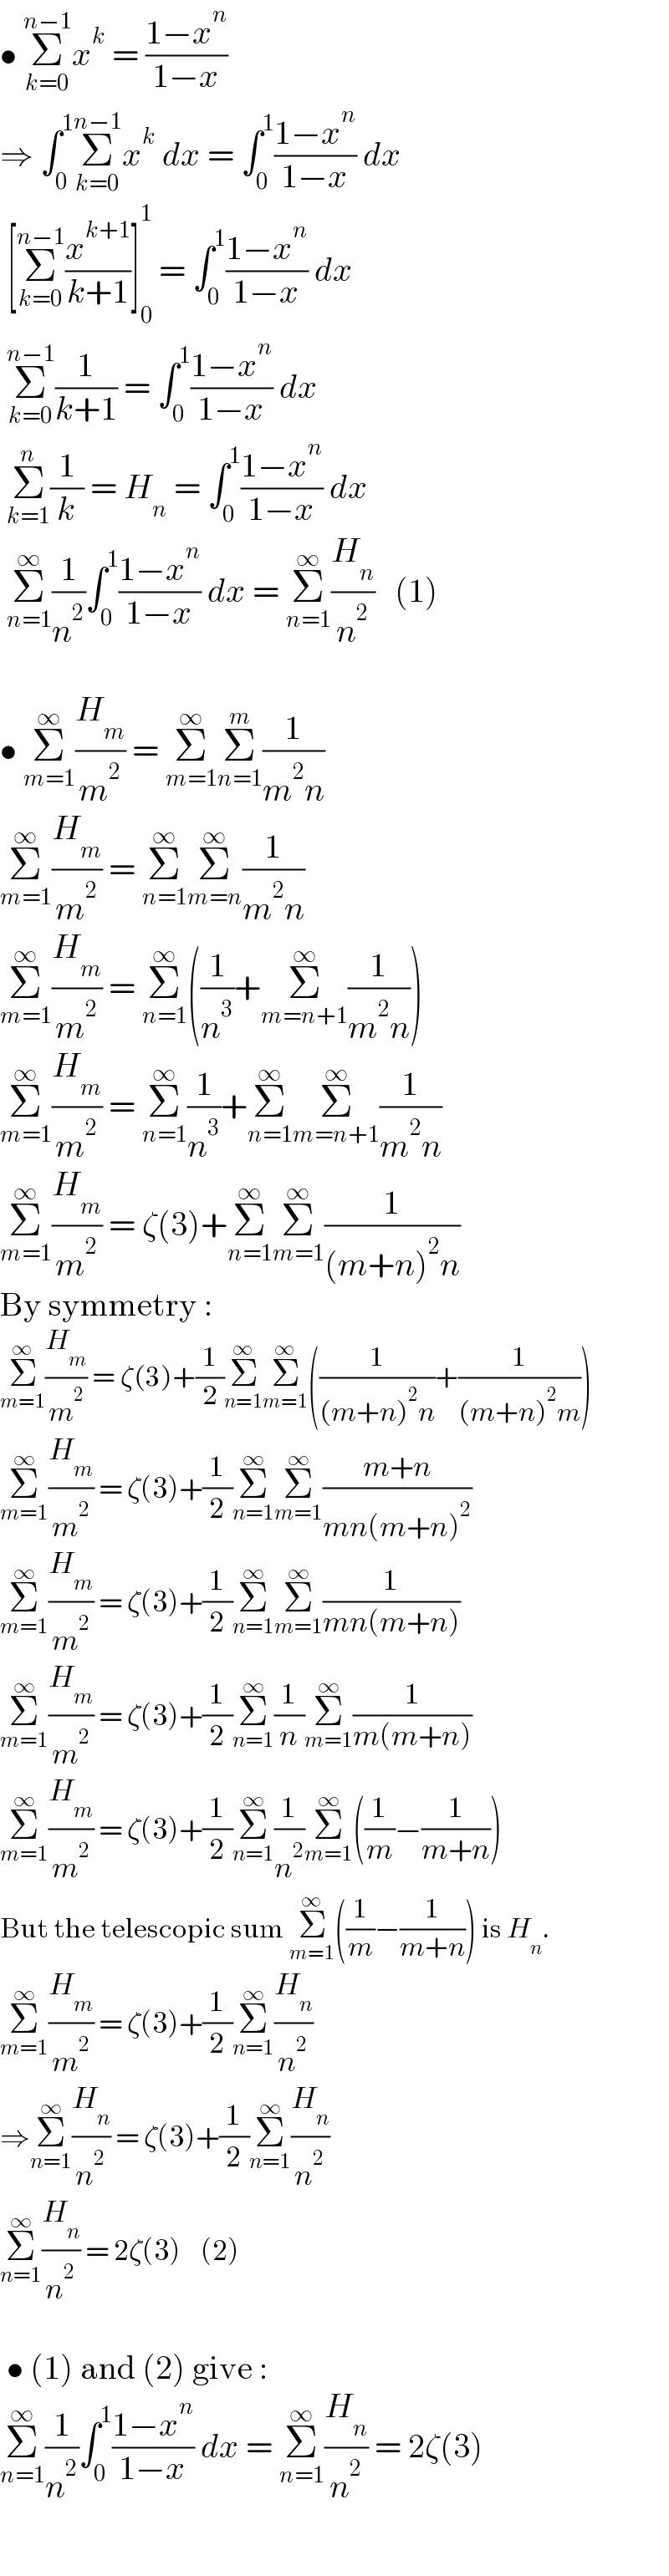 • Σ_(k=0) ^(n−1) x^k  = ((1−x^n )/(1−x))  ⇒ ∫_0 ^1 Σ_(k=0) ^(n−1) x^k  dx = ∫_0 ^1 ((1−x^n )/(1−x)) dx   [Σ_(k=0) ^(n−1) (x^(k+1) /(k+1))]_0 ^1  = ∫_0 ^1 ((1−x^n )/(1−x)) dx   Σ_(k=0) ^(n−1) (1/(k+1)) = ∫_0 ^1 ((1−x^n )/(1−x)) dx   Σ_(k=1) ^n (1/k) = H_n  = ∫_0 ^1 ((1−x^n )/(1−x)) dx   Σ_(n=1) ^∞ (1/n^2 )∫_0 ^1 ((1−x^n )/(1−x)) dx = Σ_(n=1) ^∞ (H_n /n^2 )   (1)    • Σ_(m=1) ^∞ (H_m /m^2 ) = Σ_(m=1) ^∞ Σ_(n=1) ^m (1/(m^2 n))  Σ_(m=1) ^∞ (H_m /m^2 ) = Σ_(n=1) ^∞ Σ_(m=n) ^∞ (1/(m^2 n))  Σ_(m=1) ^∞ (H_m /m^2 ) = Σ_(n=1) ^∞ ((1/n^3 )+Σ_(m=n+1) ^∞ (1/(m^2 n)))  Σ_(m=1) ^∞ (H_m /m^2 ) = Σ_(n=1) ^∞ (1/n^3 )+Σ_(n=1) ^∞ Σ_(m=n+1) ^∞ (1/(m^2 n))  Σ_(m=1) ^∞ (H_m /m^2 ) = ζ(3)+Σ_(n=1) ^∞ Σ_(m=1) ^∞ (1/((m+n)^2 n))  By symmetry :  Σ_(m=1) ^∞ (H_m /m^2 ) = ζ(3)+(1/2)Σ_(n=1) ^∞ Σ_(m=1) ^∞ ((1/((m+n)^2 n))+(1/((m+n)^2 m)))  Σ_(m=1) ^∞ (H_m /m^2 ) = ζ(3)+(1/2)Σ_(n=1) ^∞ Σ_(m=1) ^∞ ((m+n)/(mn(m+n)^2 ))  Σ_(m=1) ^∞ (H_m /m^2 ) = ζ(3)+(1/2)Σ_(n=1) ^∞ Σ_(m=1) ^∞ (1/(mn(m+n)))  Σ_(m=1) ^∞ (H_m /m^2 ) = ζ(3)+(1/2)Σ_(n=1) ^∞ (1/n)Σ_(m=1) ^∞ (1/(m(m+n)))  Σ_(m=1) ^∞ (H_m /m^2 ) = ζ(3)+(1/2)Σ_(n=1) ^∞ (1/n^2 )Σ_(m=1) ^∞ ((1/m)−(1/(m+n)))  But the telescopic sum Σ_(m=1) ^∞ ((1/m)−(1/(m+n))) is H_n .  Σ_(m=1) ^∞ (H_m /m^2 ) = ζ(3)+(1/2)Σ_(n=1) ^∞ (H_n /n^2 )  ⇒Σ_(n=1) ^∞ (H_n /n^2 ) = ζ(3)+(1/2)Σ_(n=1) ^∞ (H_n /n^2 )  Σ_(n=1) ^∞ (H_n /n^2 ) = 2ζ(3)    (2)     • (1) and (2) give :  Σ_(n=1) ^∞ (1/n^2 )∫_0 ^1 ((1−x^n )/(1−x)) dx = Σ_(n=1) ^∞ (H_n /n^2 ) = 2ζ(3)    